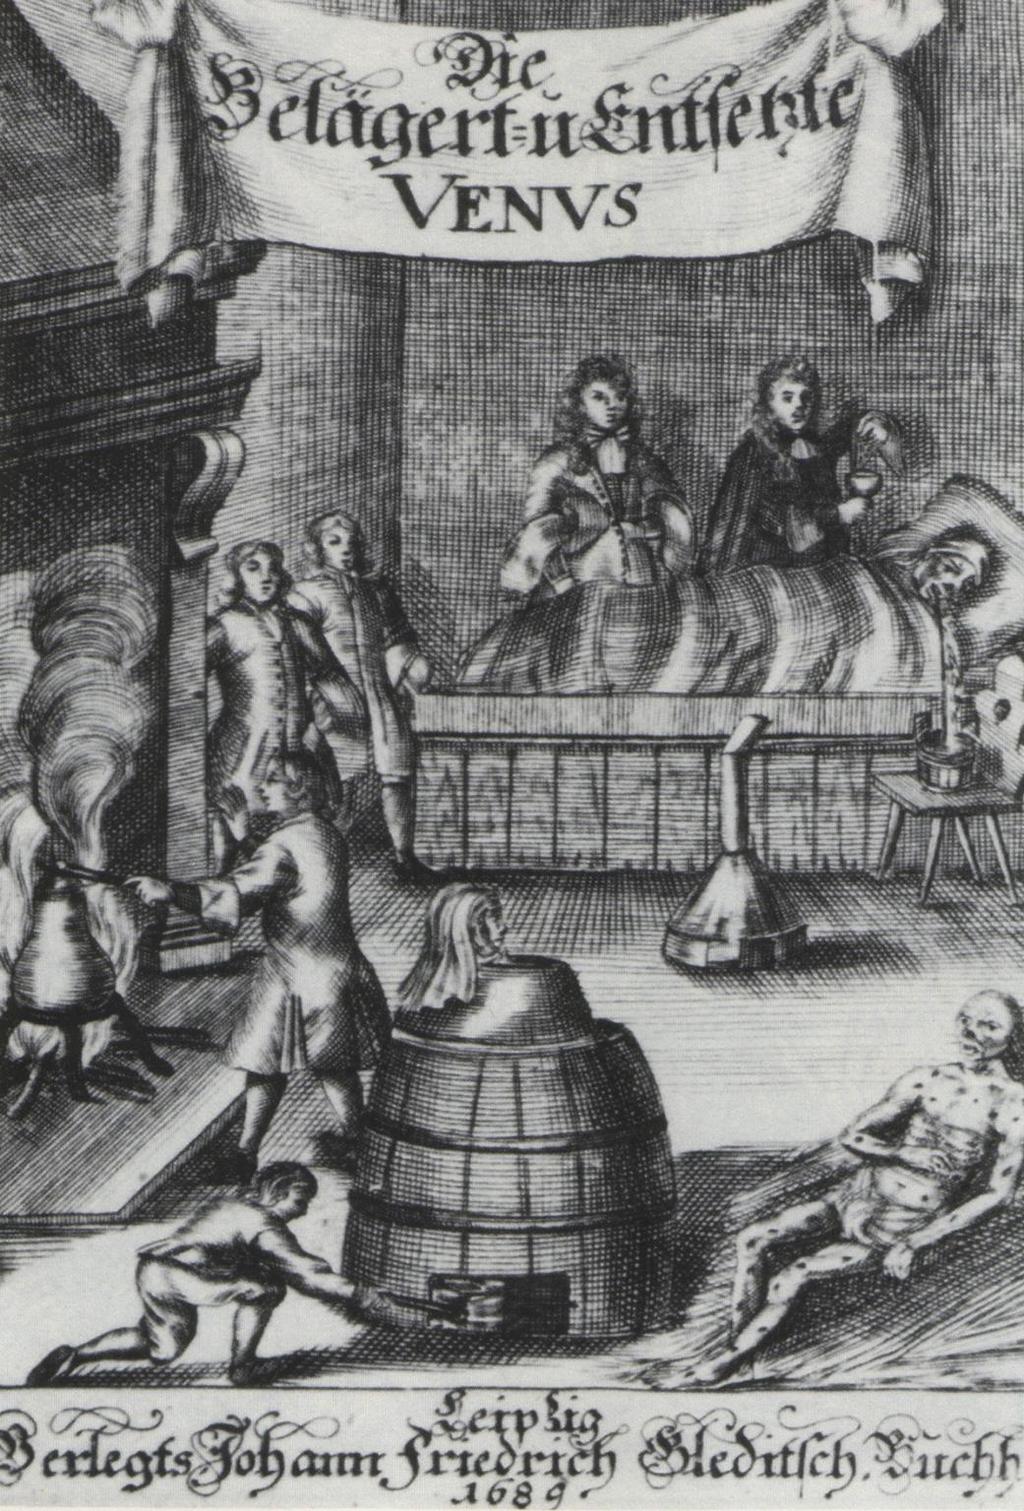 Siglos XVI, XVII y XVIII sudoración (calor), mercurio.